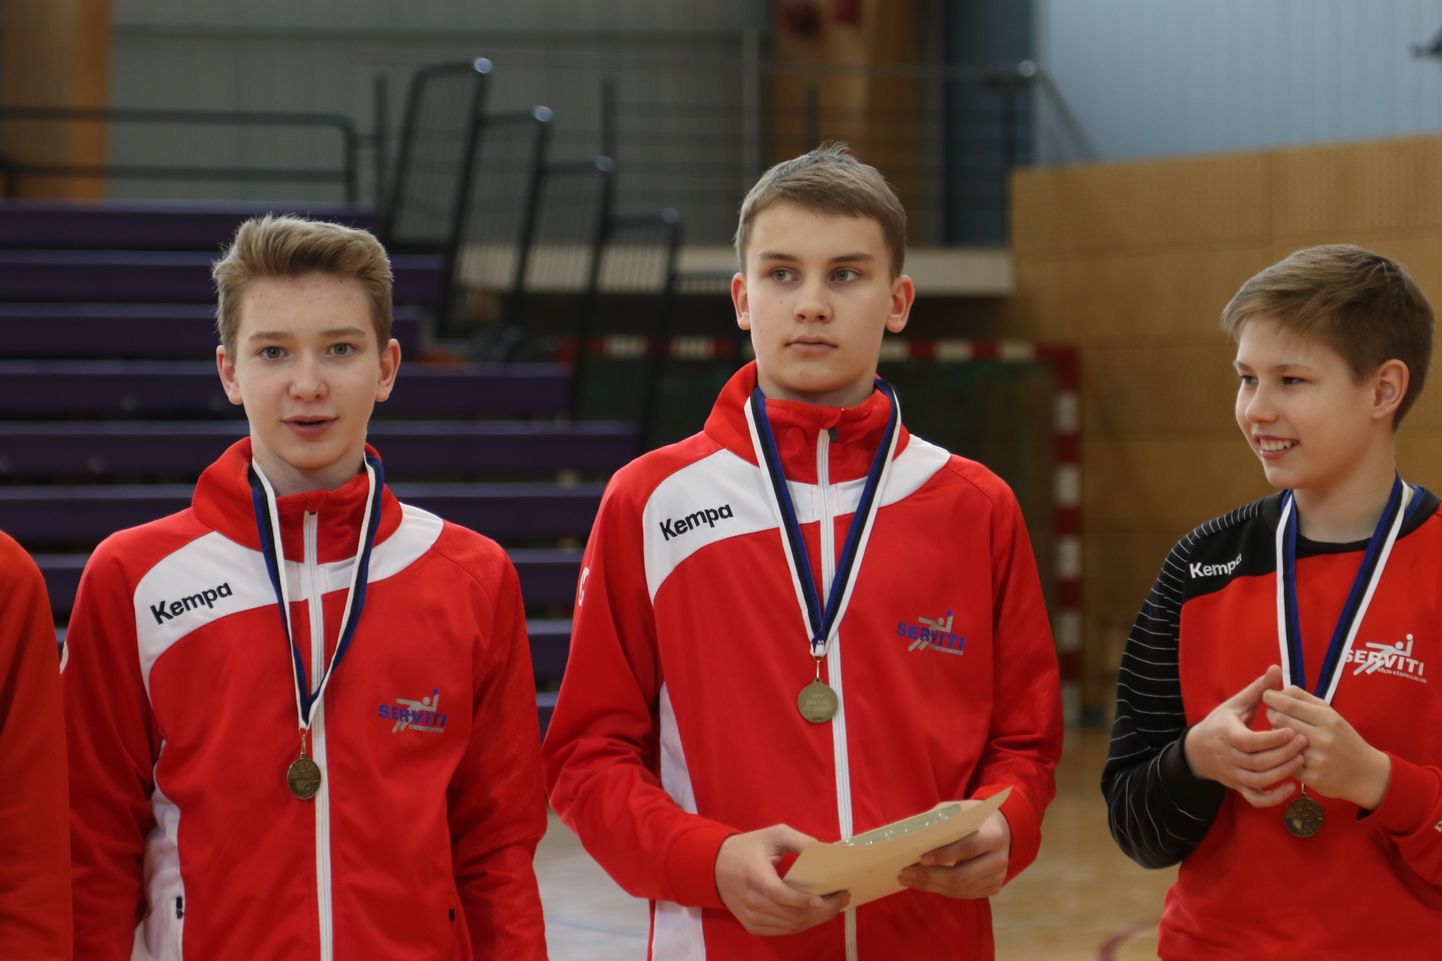 Eesti meistrivõistlustel kevadel 2017 saavutasid Mihkel Maspanov, Lauri Land ja Kermo saksing koos võistkonnaga C-klassis 3. koha. Kas õnnestub kohta kaitsta või saavutada enamat, näitab tänavune teine etapp.